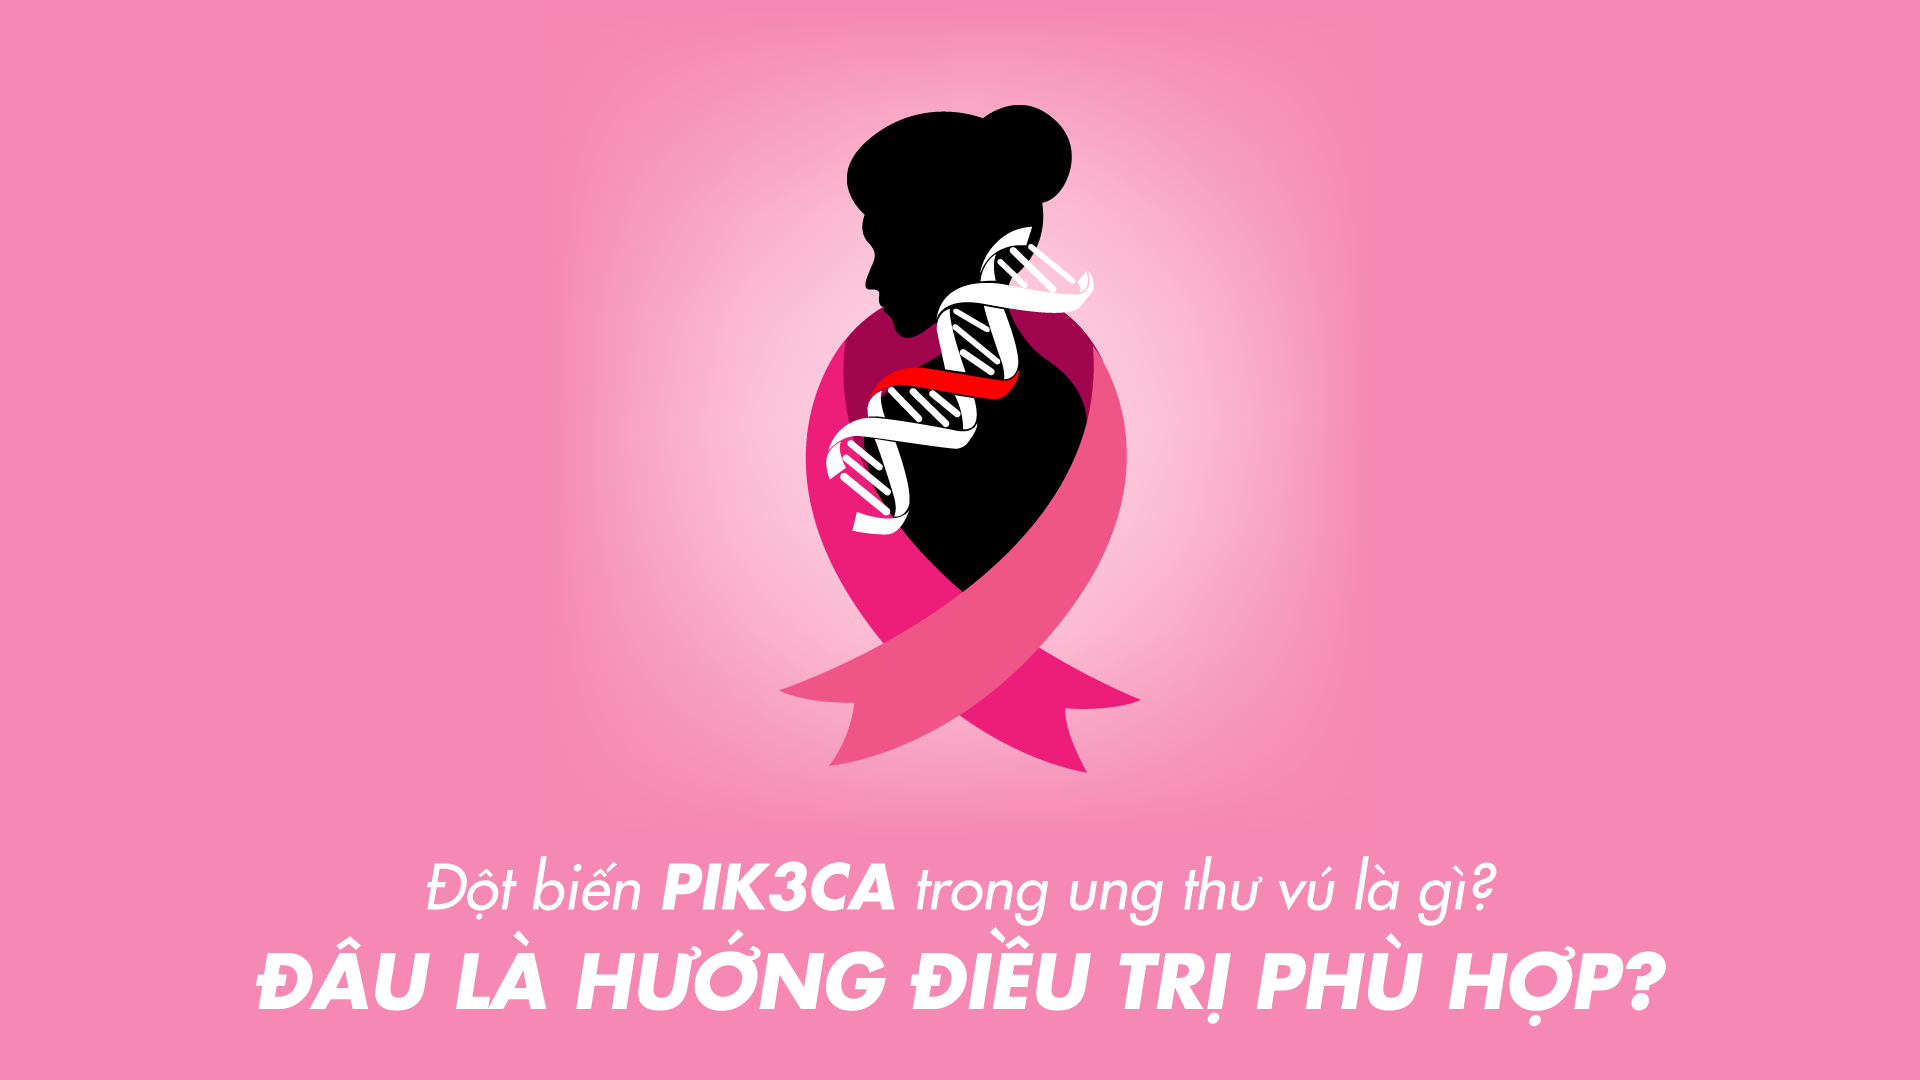 [Video] Ung thư vú có đột biến PIK3CA: Tìm hiểu để điều trị tốt hơn